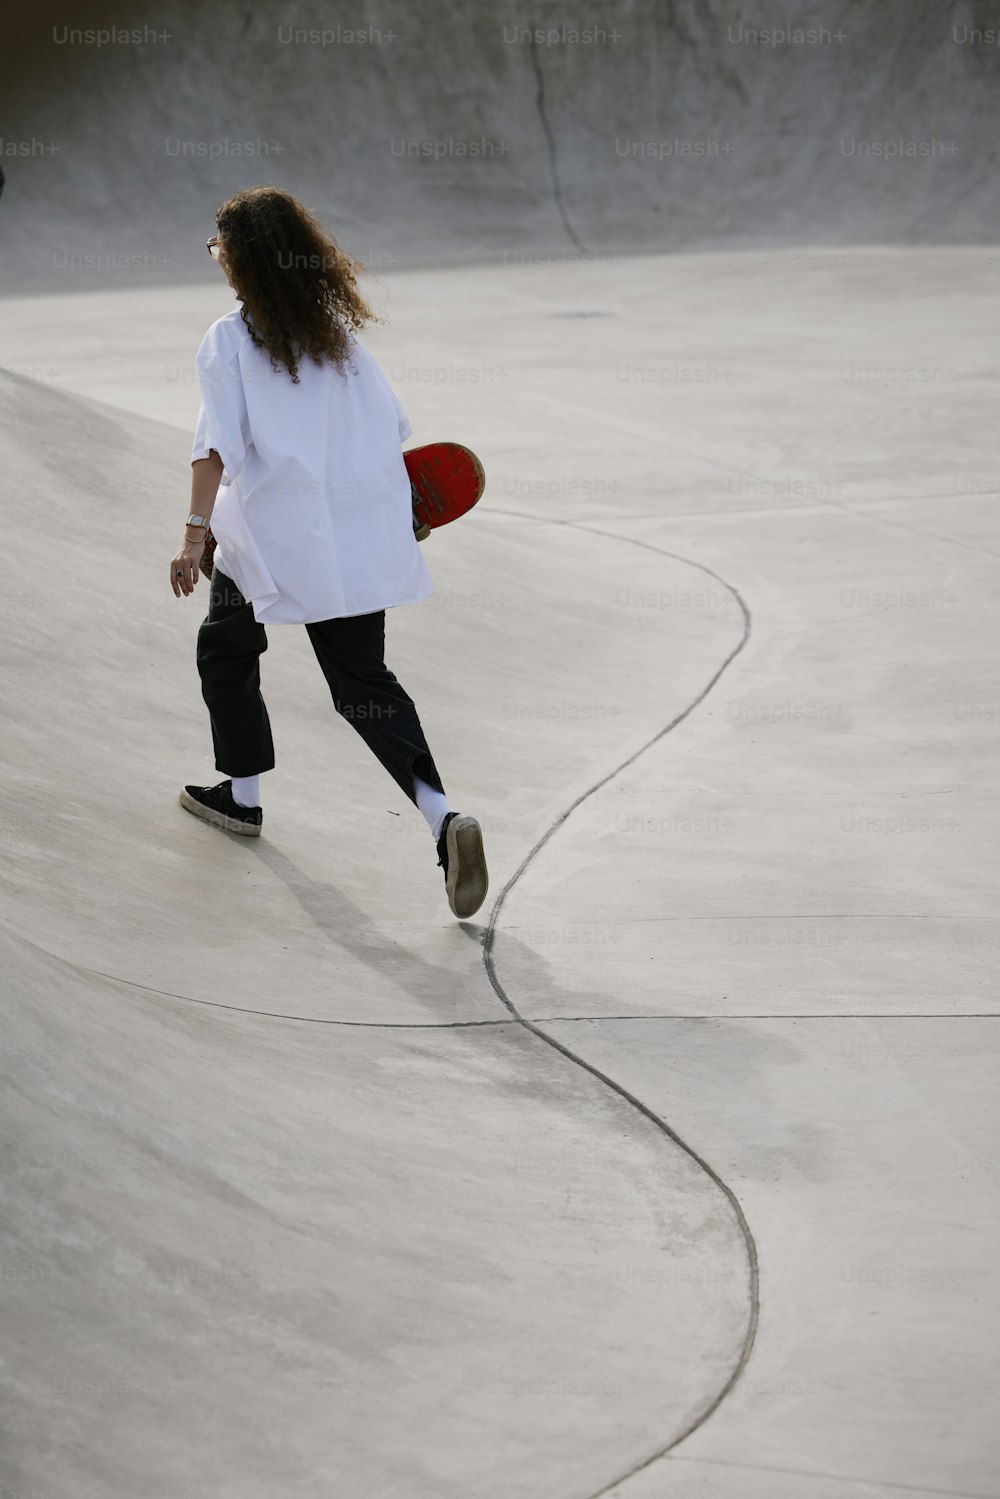 Una persona montando una tabla de skate en una rampa